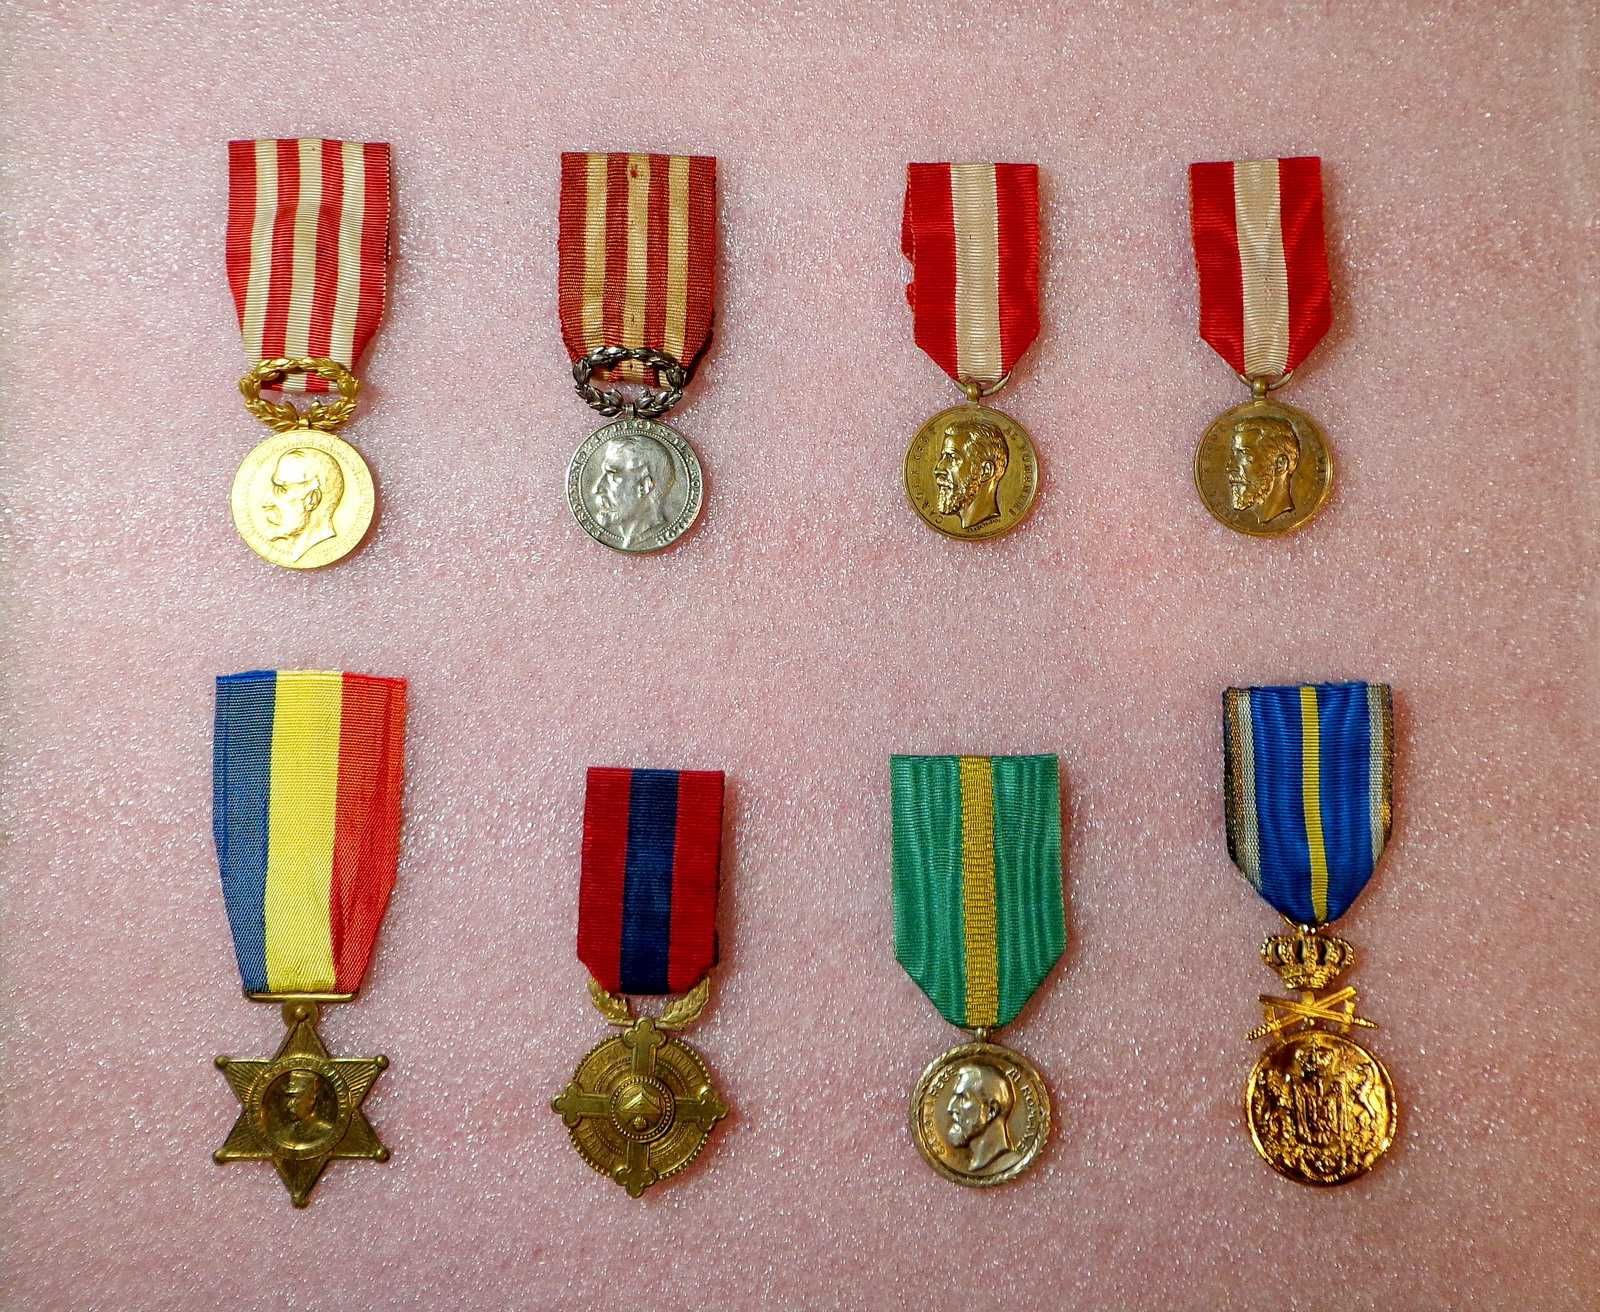 DECORATII-Ordine-Medalii-Cruci-REGALISTE-Rege Carol-Ferdinand-Mihai I